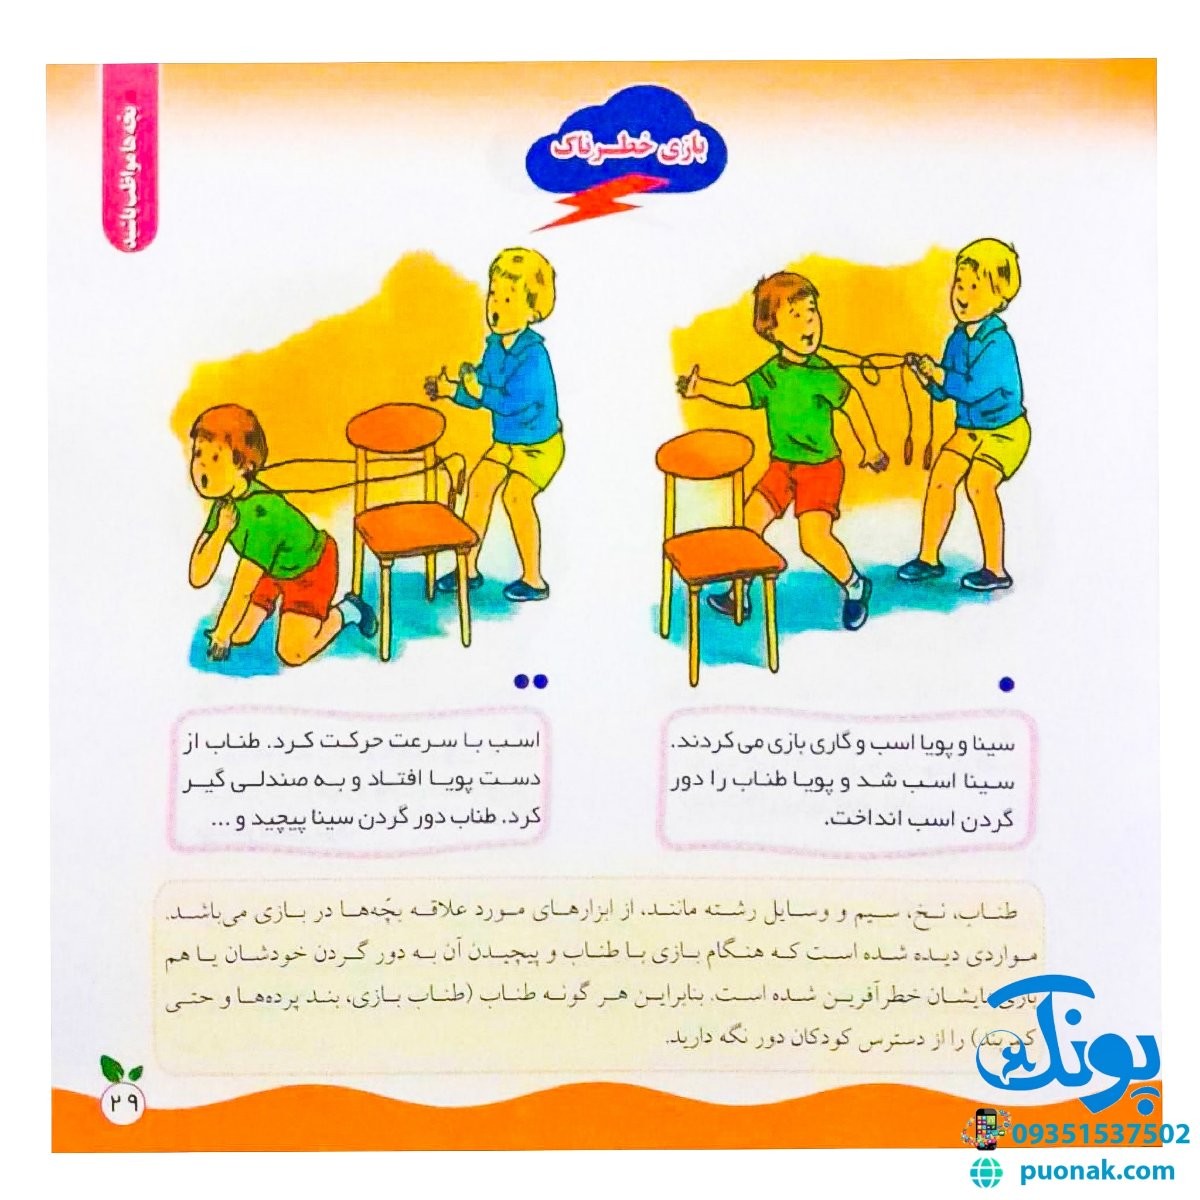 مجموعه کتاب های مهارت محور کفشدوزک جلد سی و ششم ۳۶ (بچه ها مواظب باشید) تقویت مهارت های اساسی کودکان ۳ تا ۶ سال